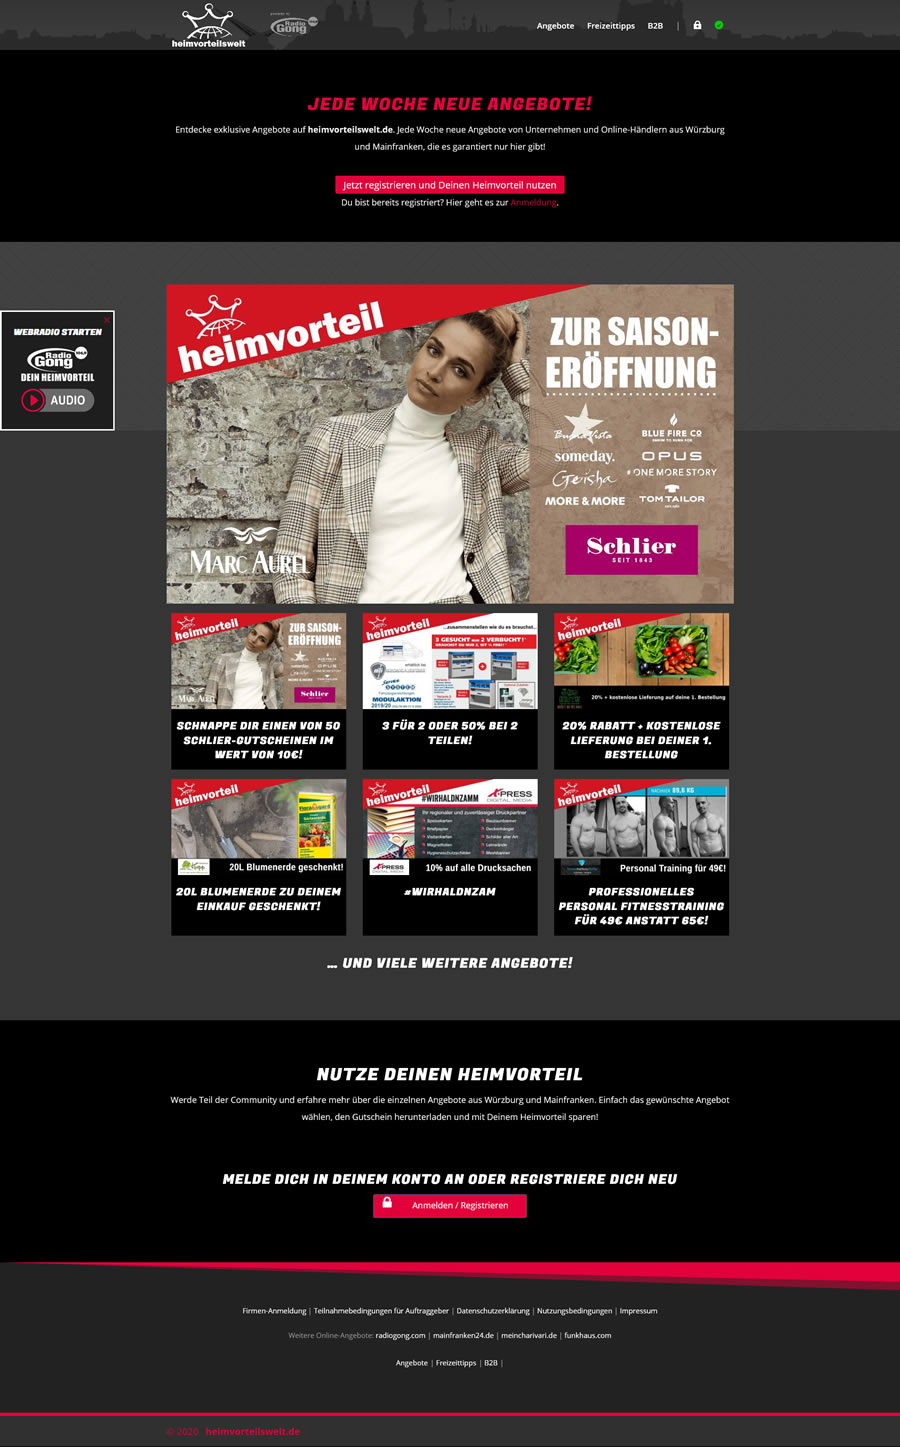 Mainfranken24.de Homepage: Die Startseite